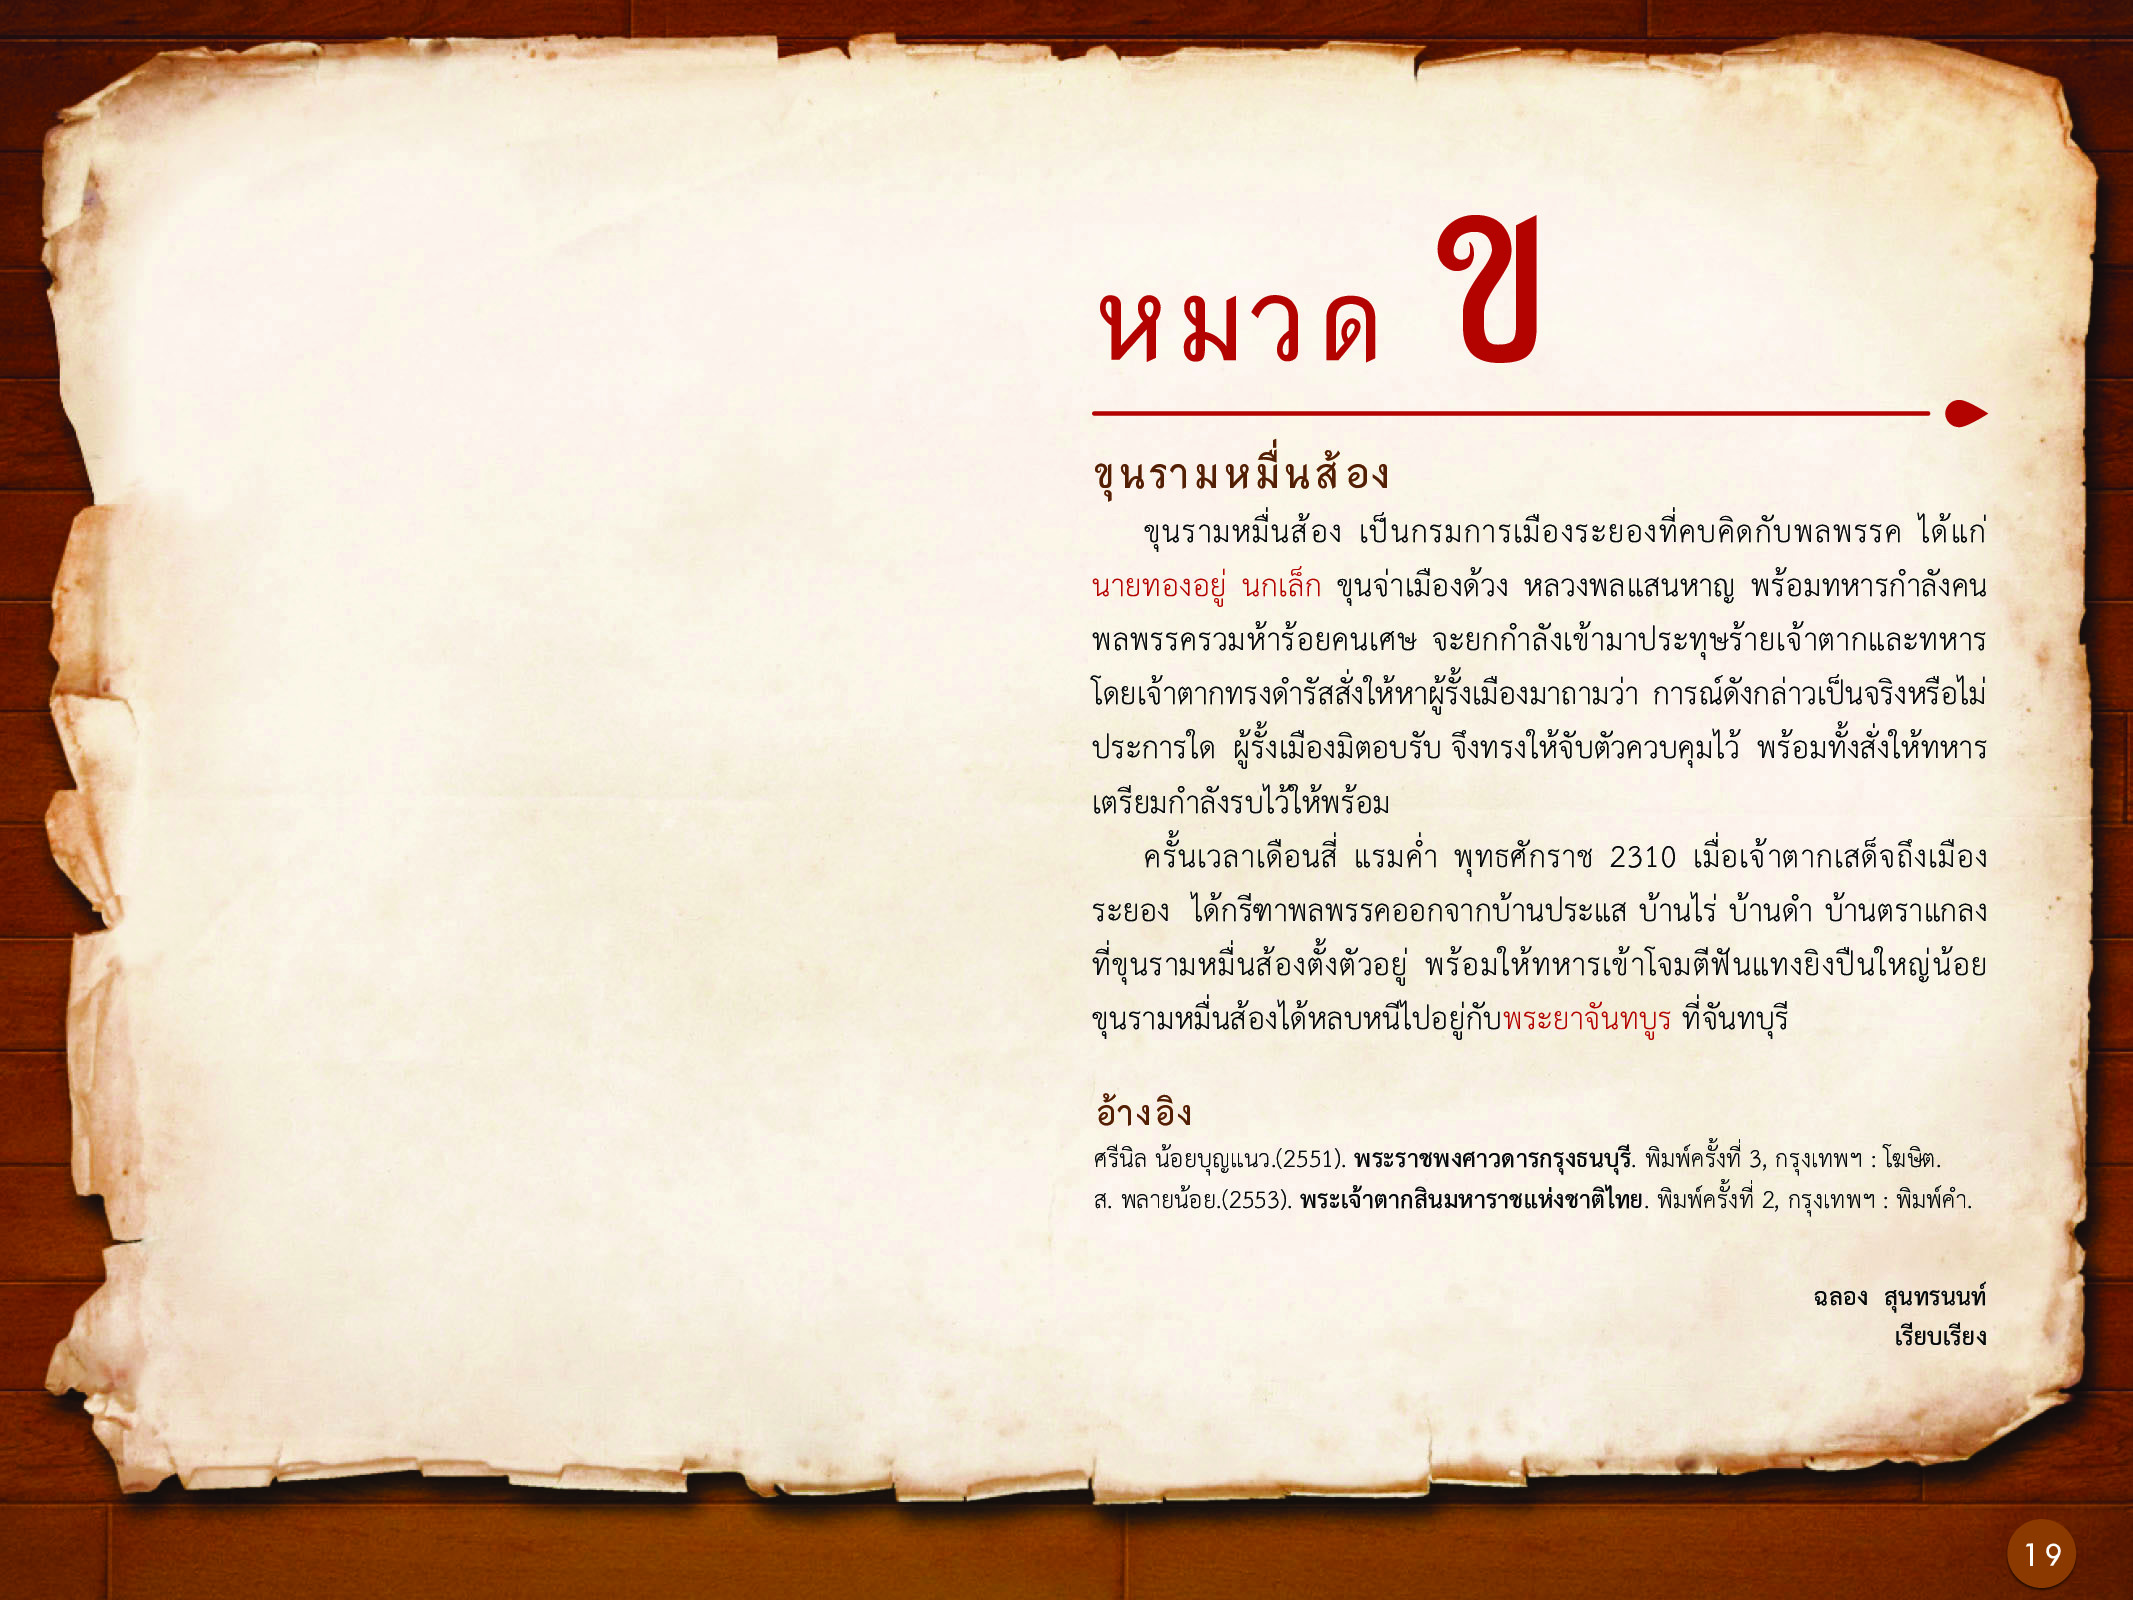 ประวัติศาสตร์กรุงธนบุรี ./images/history_dhonburi/19.jpg